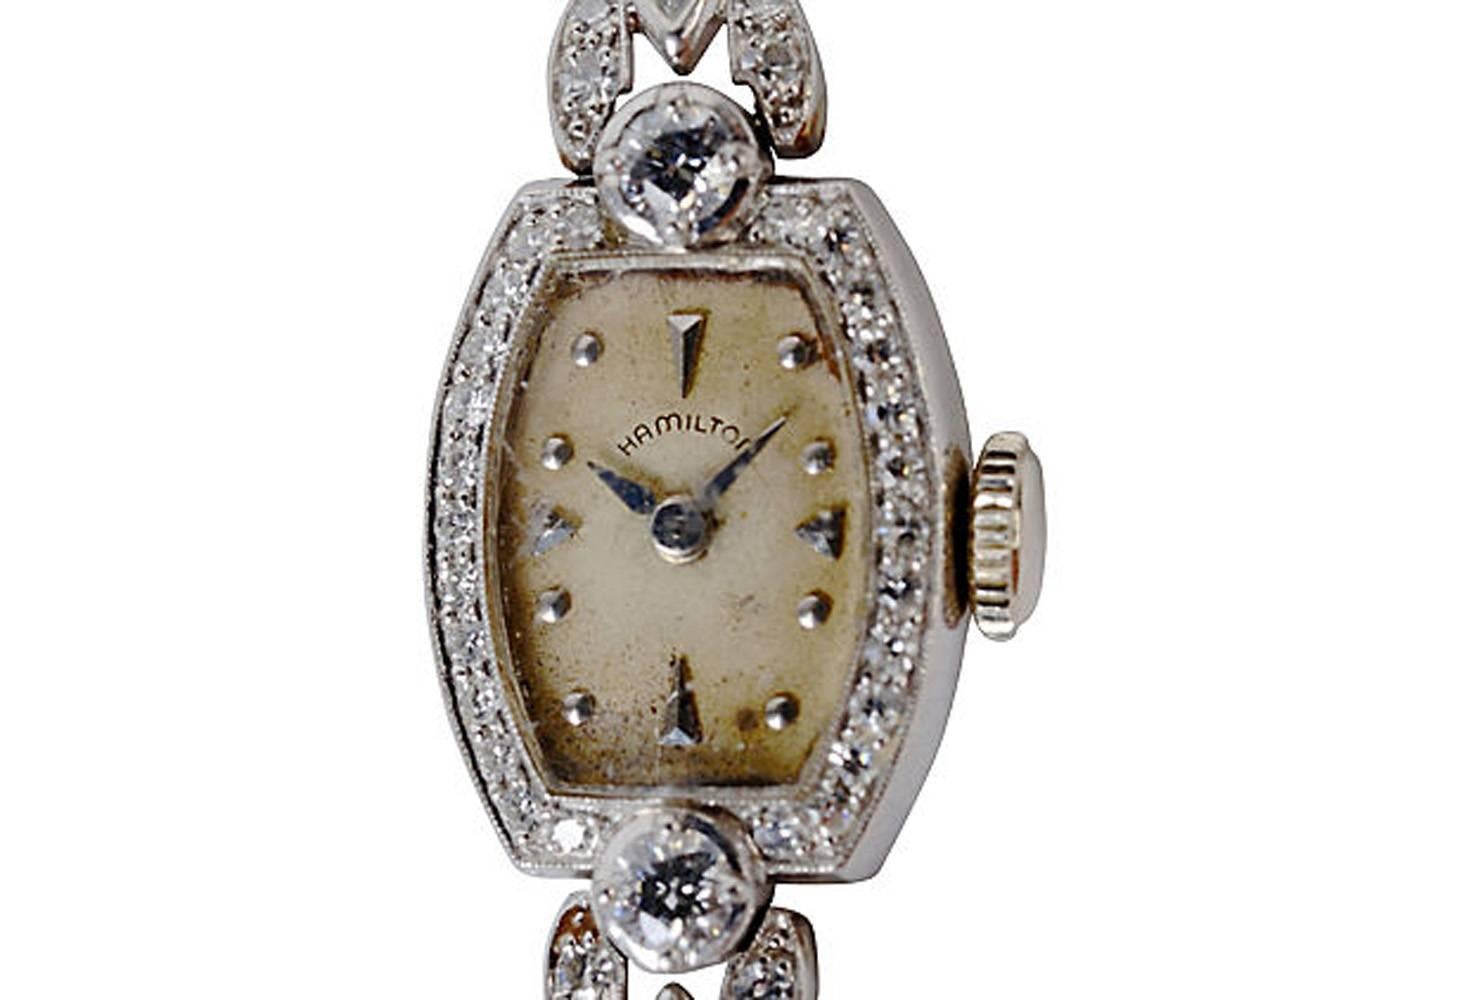 Späte Retro-Damen Hamilton Platin und Diamant-Armbanduhr, c1950 mit verschiedenen Diamanten. Gesamtgewicht der Diamanten etwa 1,02 Karat. Das originale Uhrwerk mit 17 Steinen befindet sich in einem dekorierten Gehäuse mit Motordrehung. Doppelt